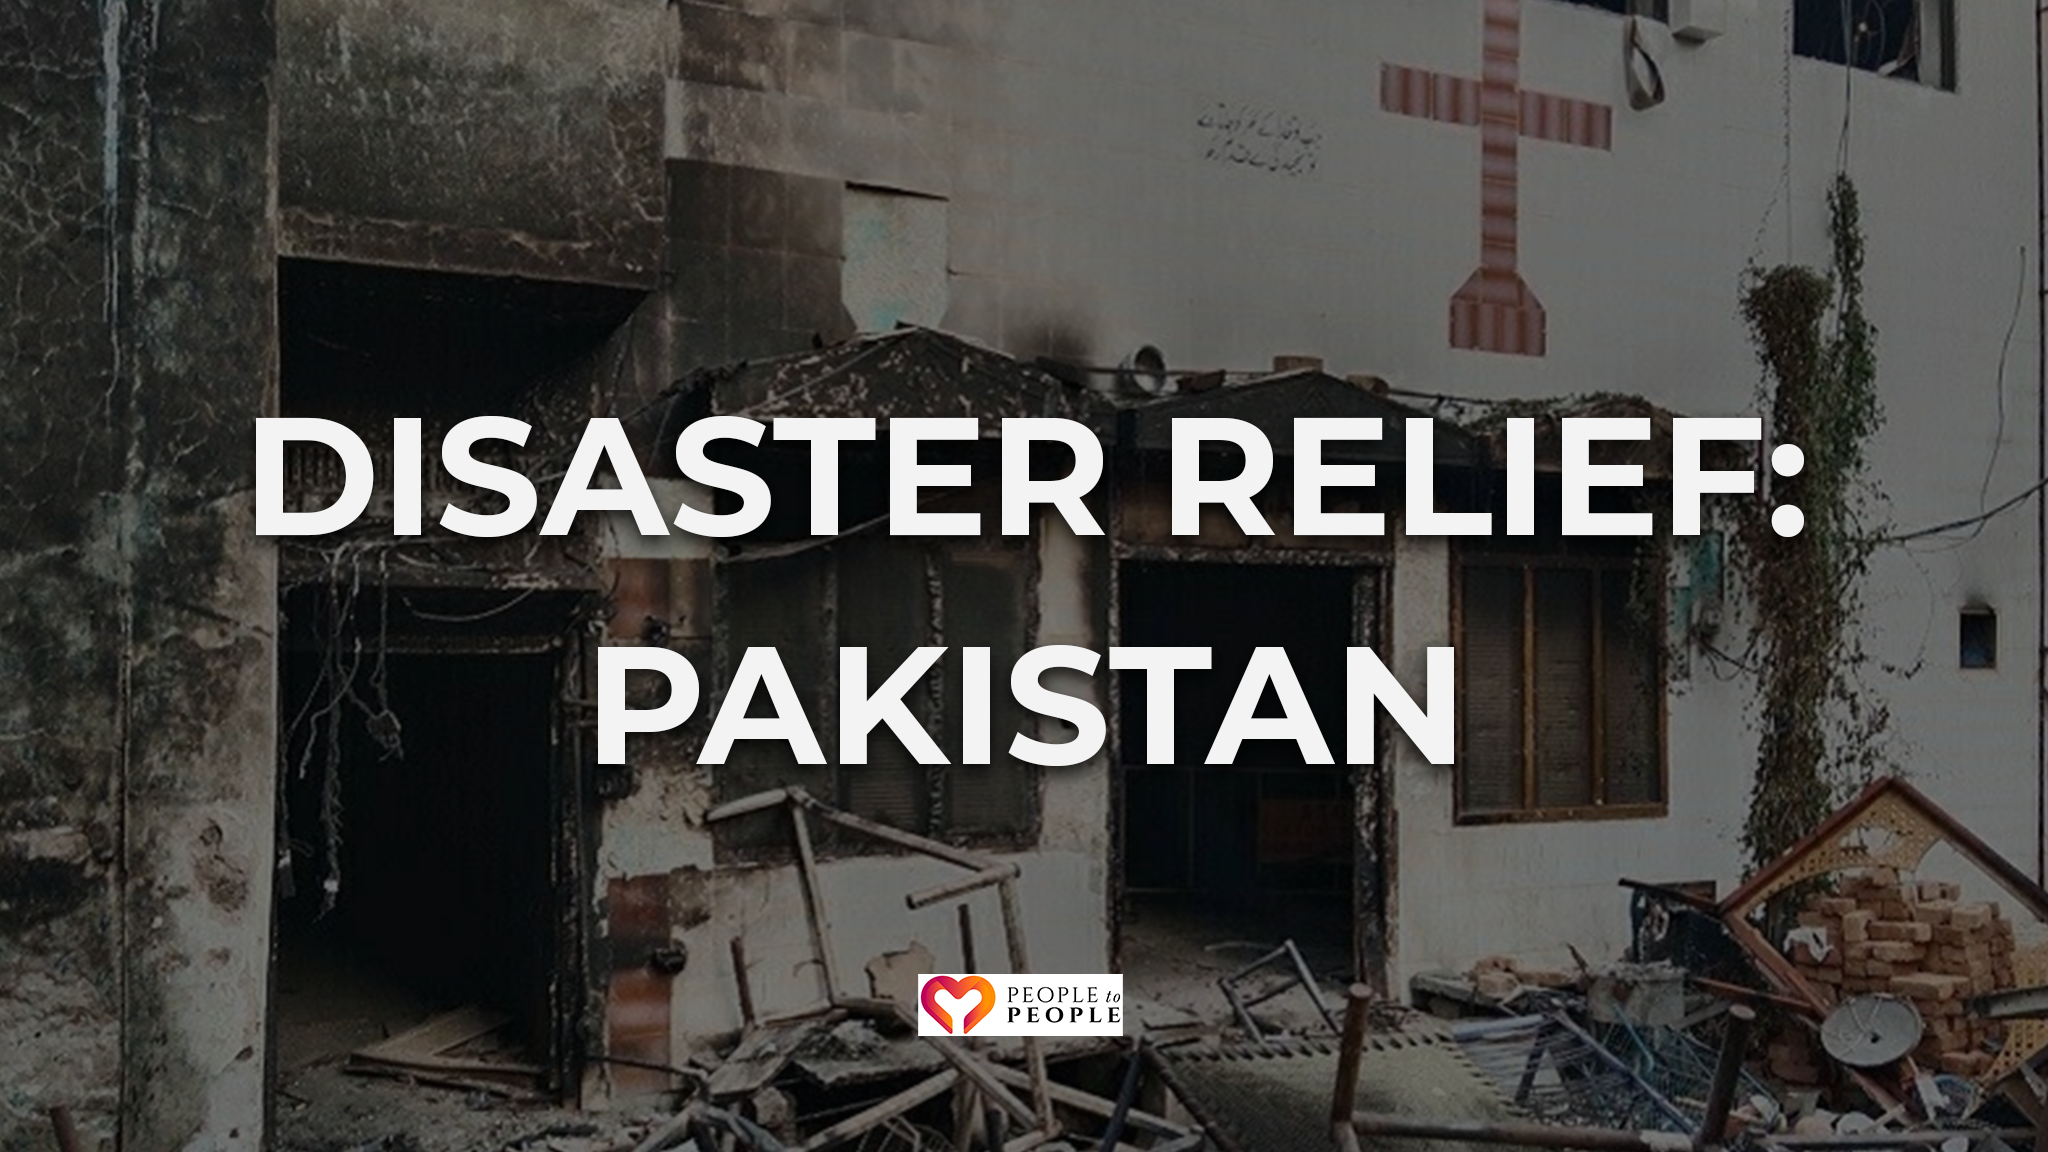 Pakistan: Disaster Relief